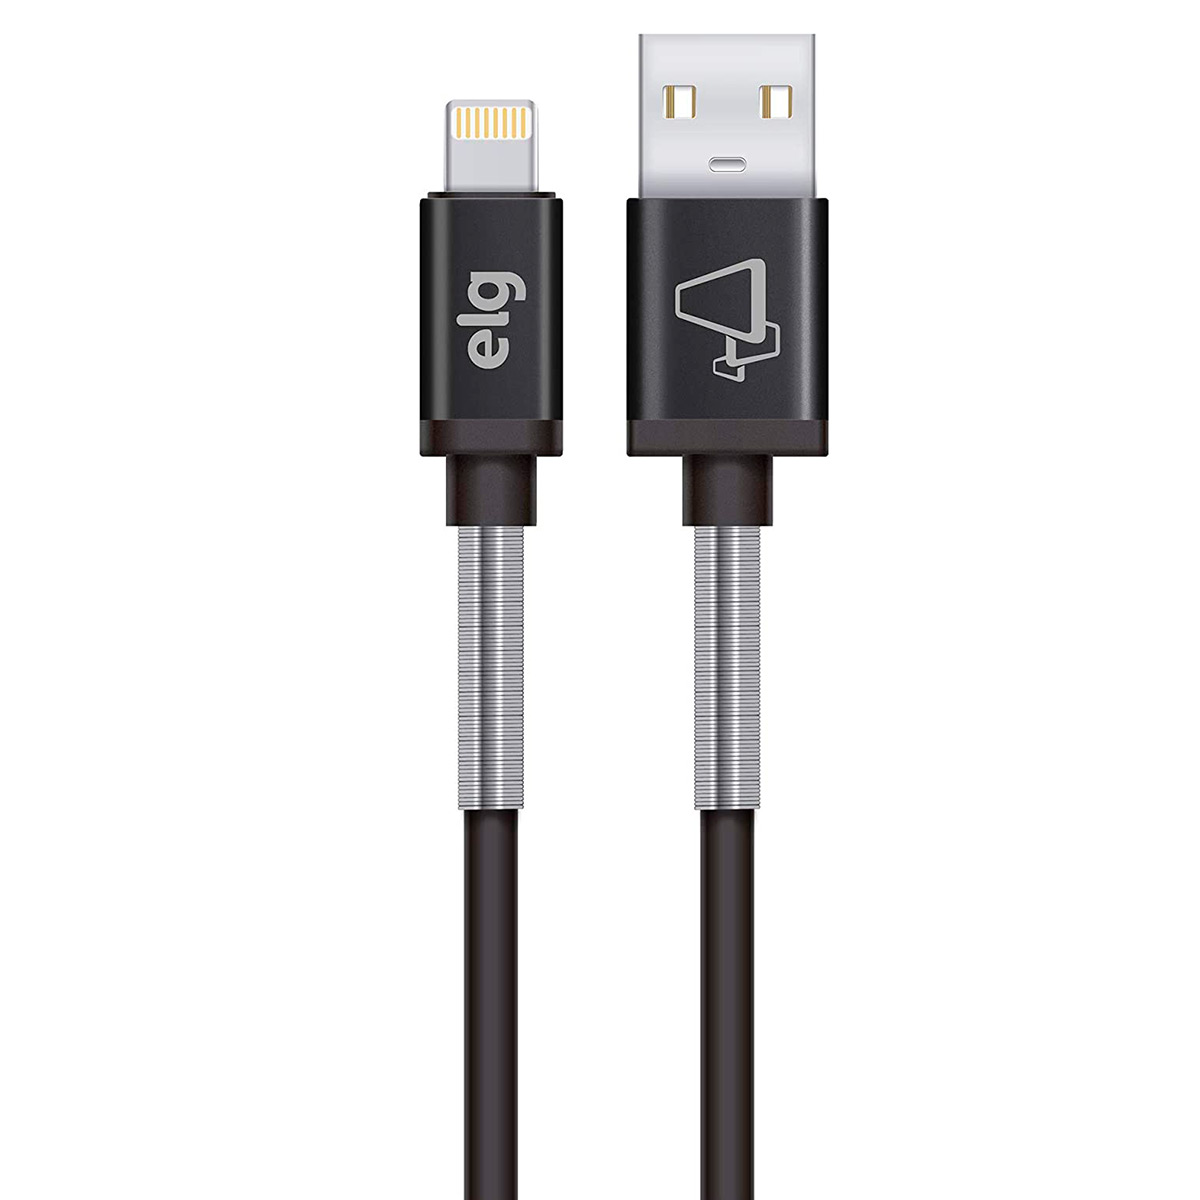 Cabo Lightning para USB - com Mola Inox de Proteção - para iPhone, iPad, iPod - ELG SP810BK